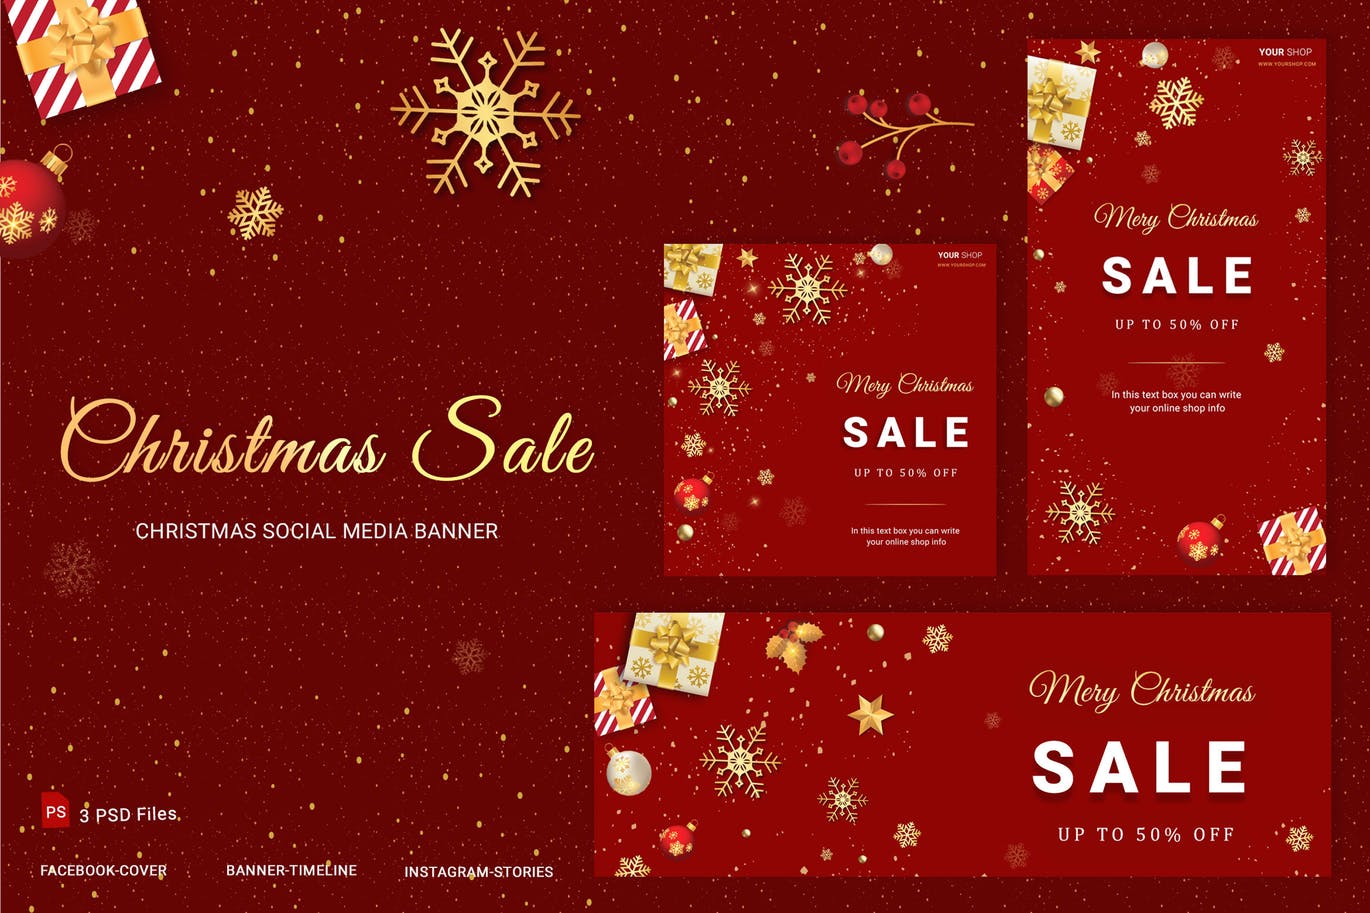 社交媒体自媒体圣诞节主题促销活动Banner设计模板素材库精选 Christmas Sale Social Media Banner插图